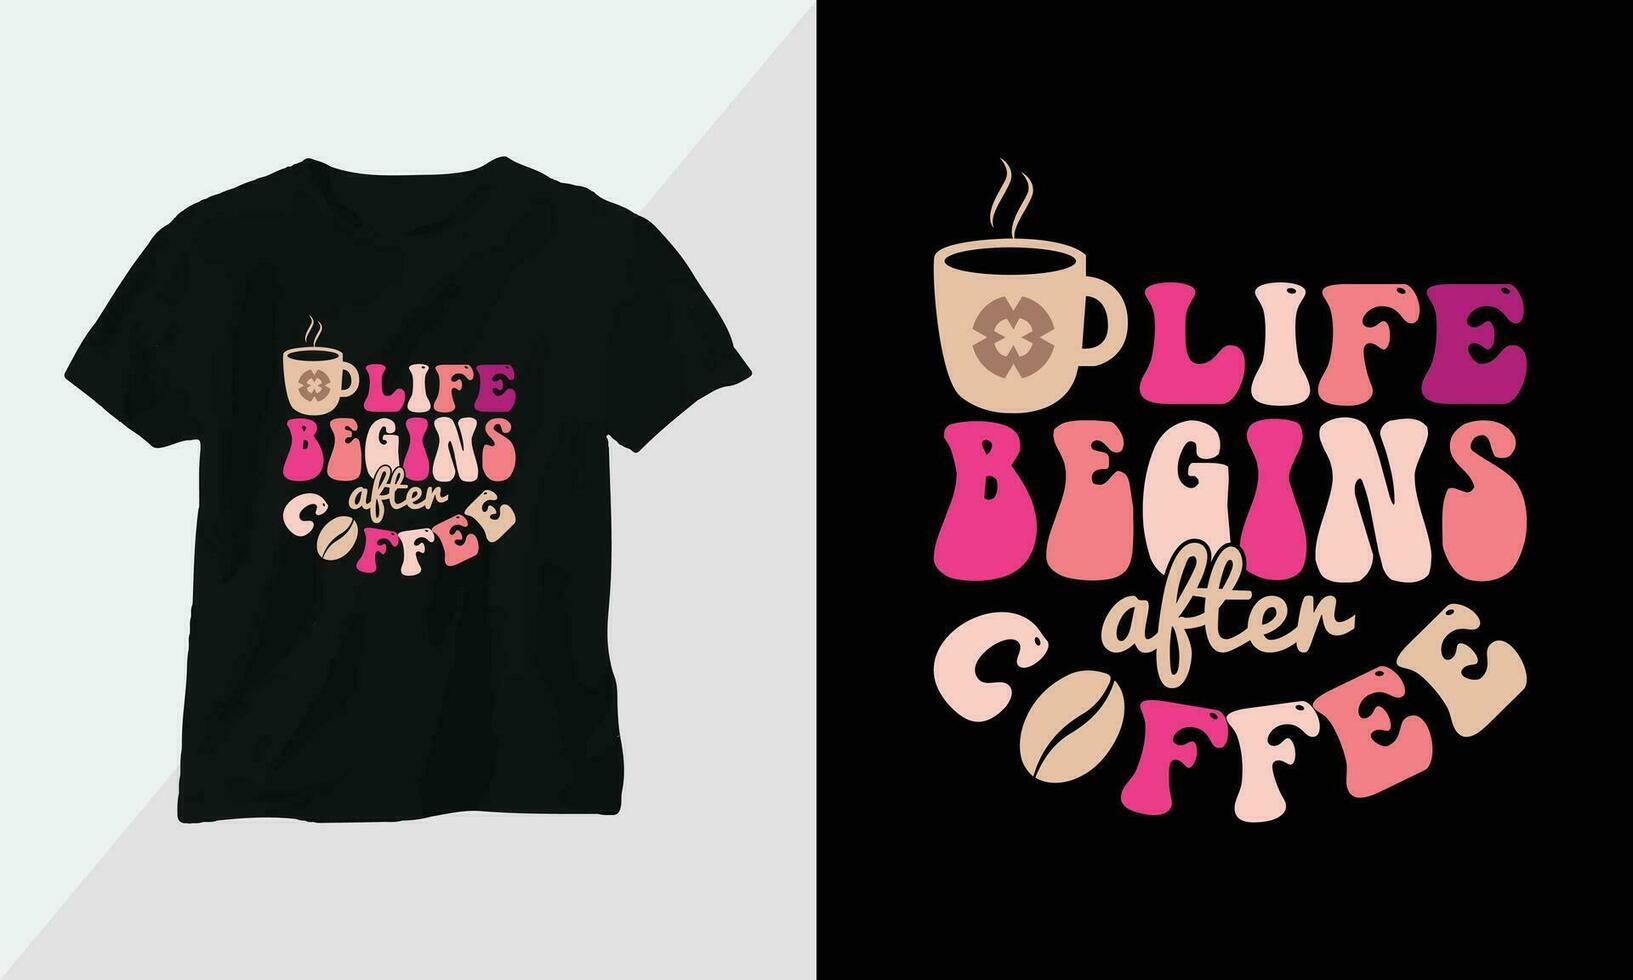 vida começa depois de café - retro groovy inspirado camiseta Projeto com retro estilo vetor